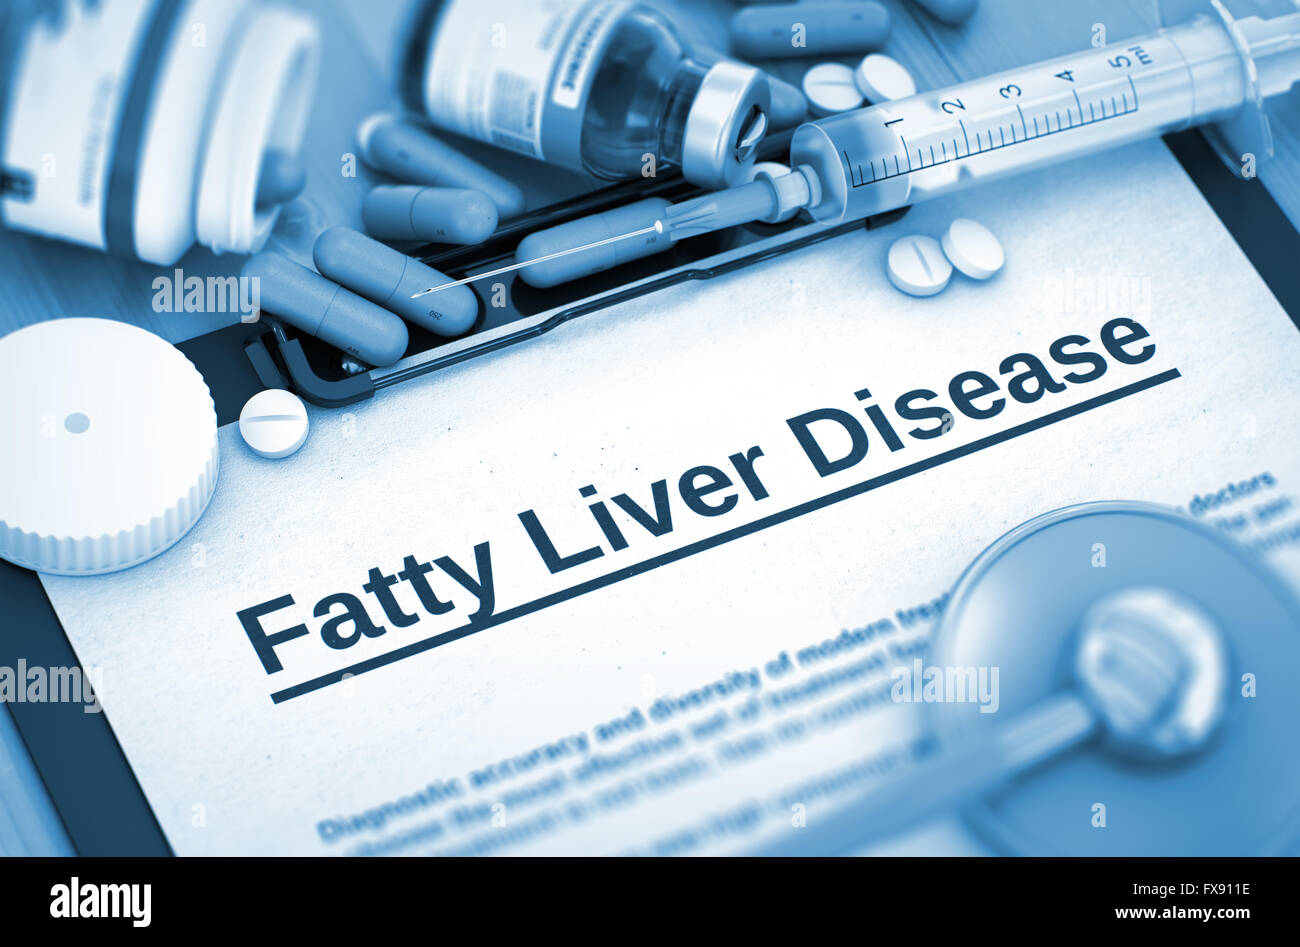 Fatty Liver Disease Diagnosis. Medical Concept. 3D. Stock Photo